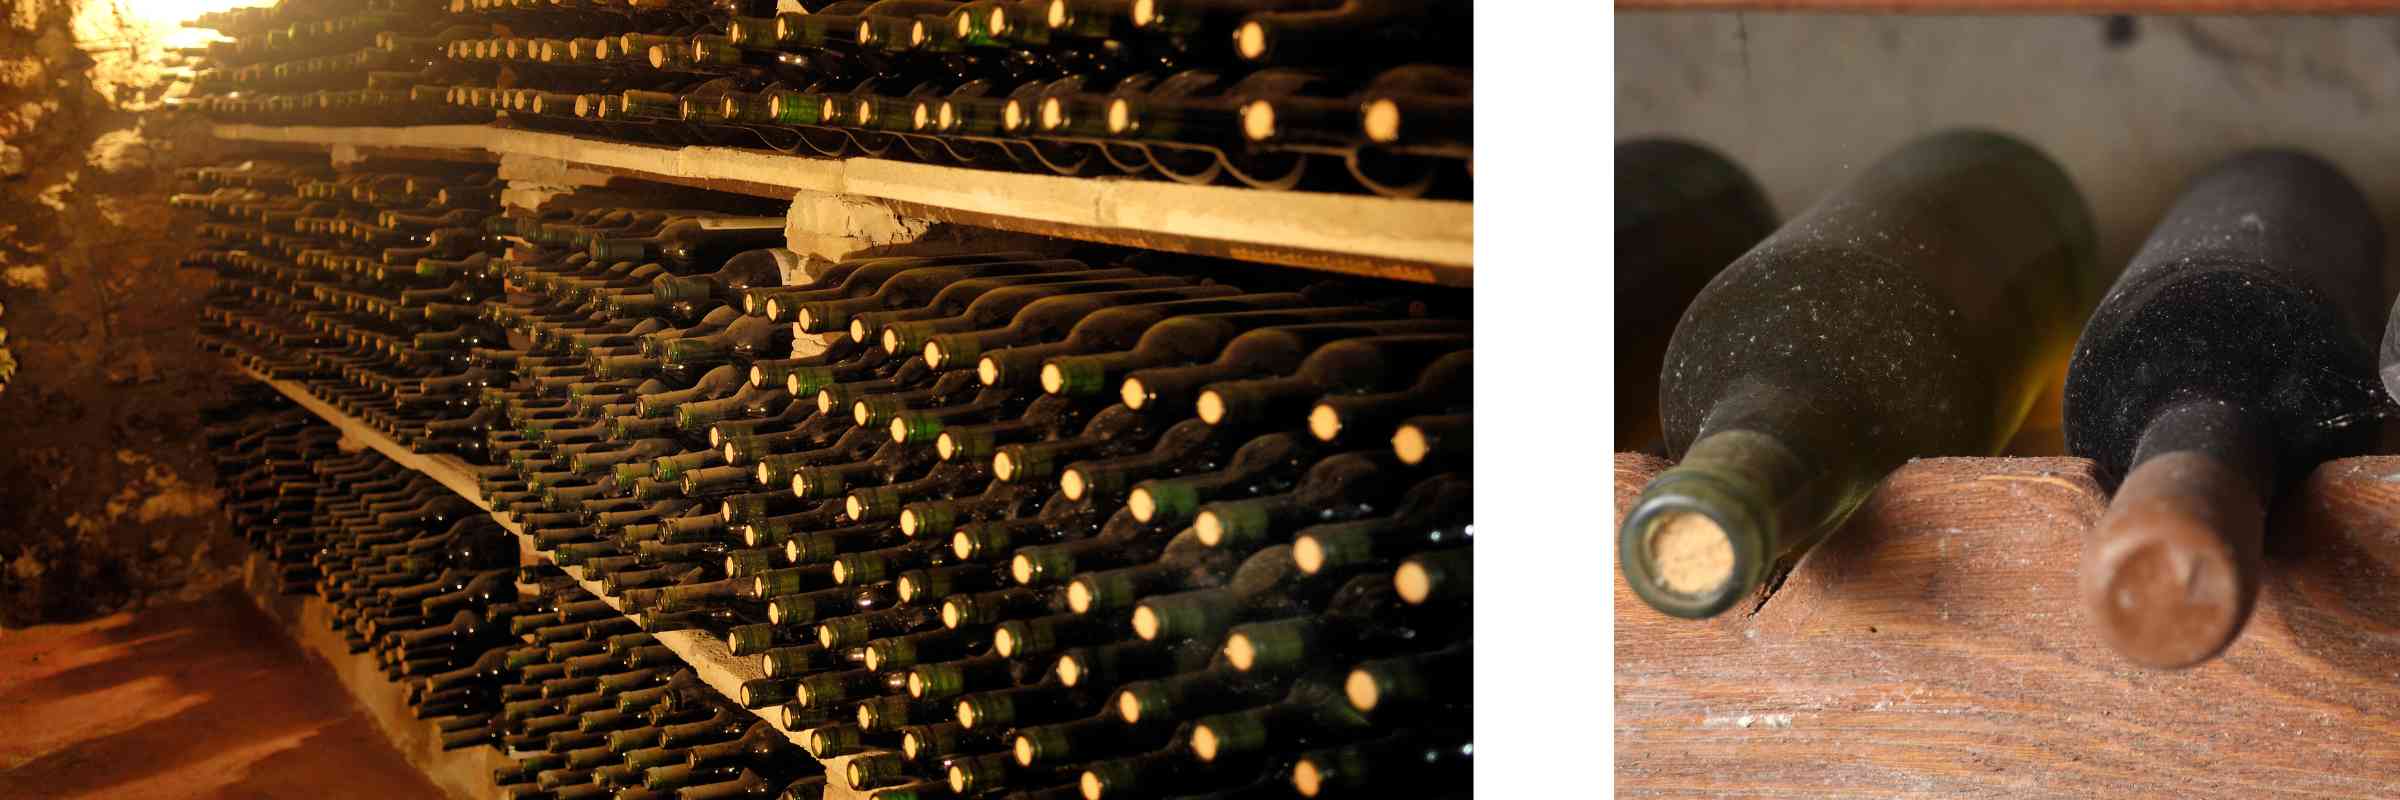 Expiring Wine In Cellar